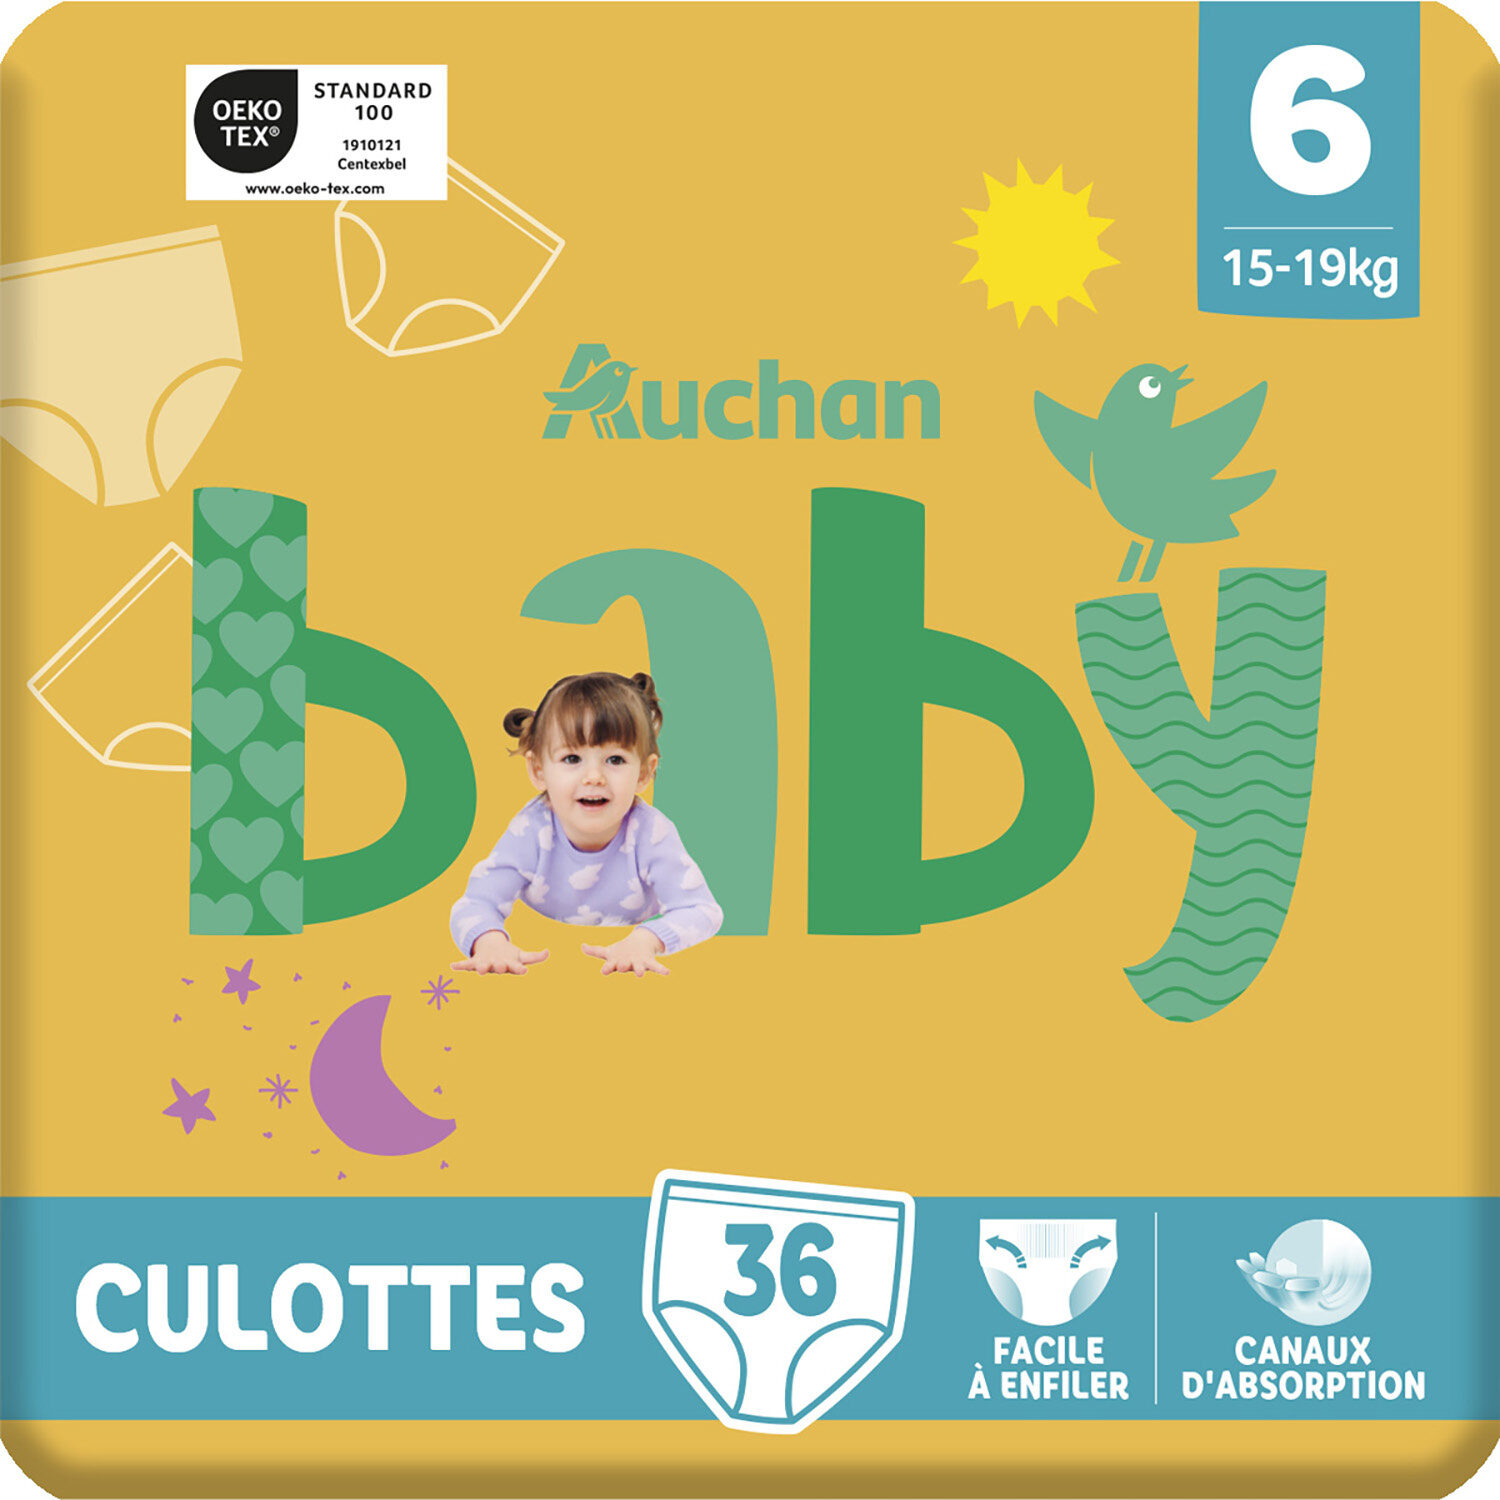 Culottes Bébé T6 - Product - fr